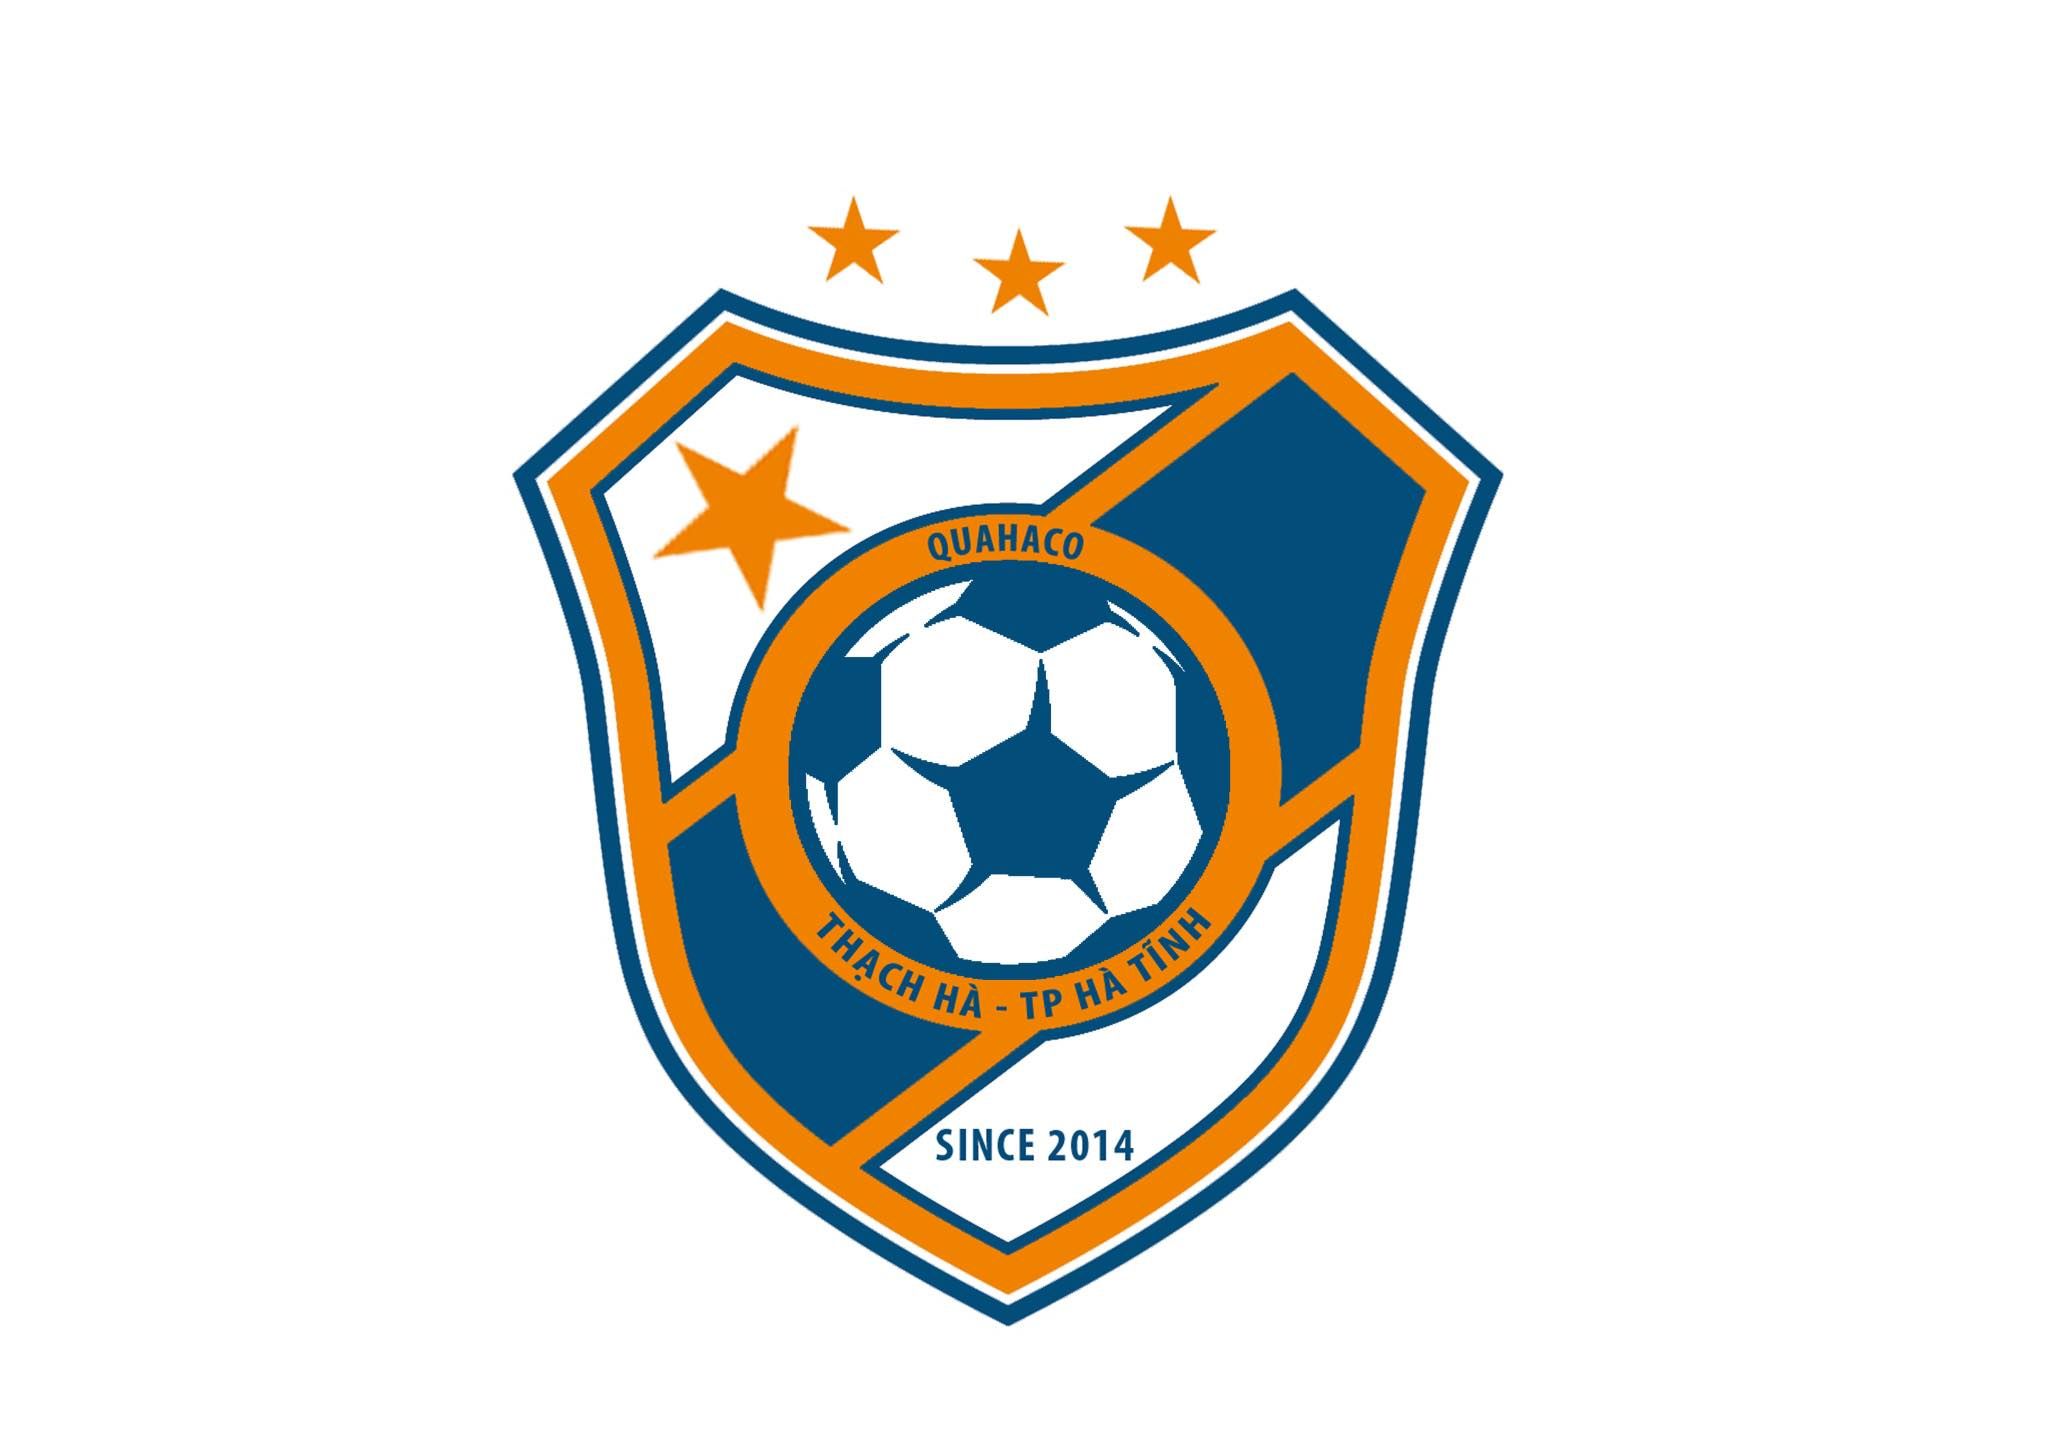 Thạch Hà - TP Hà Tĩnh FC